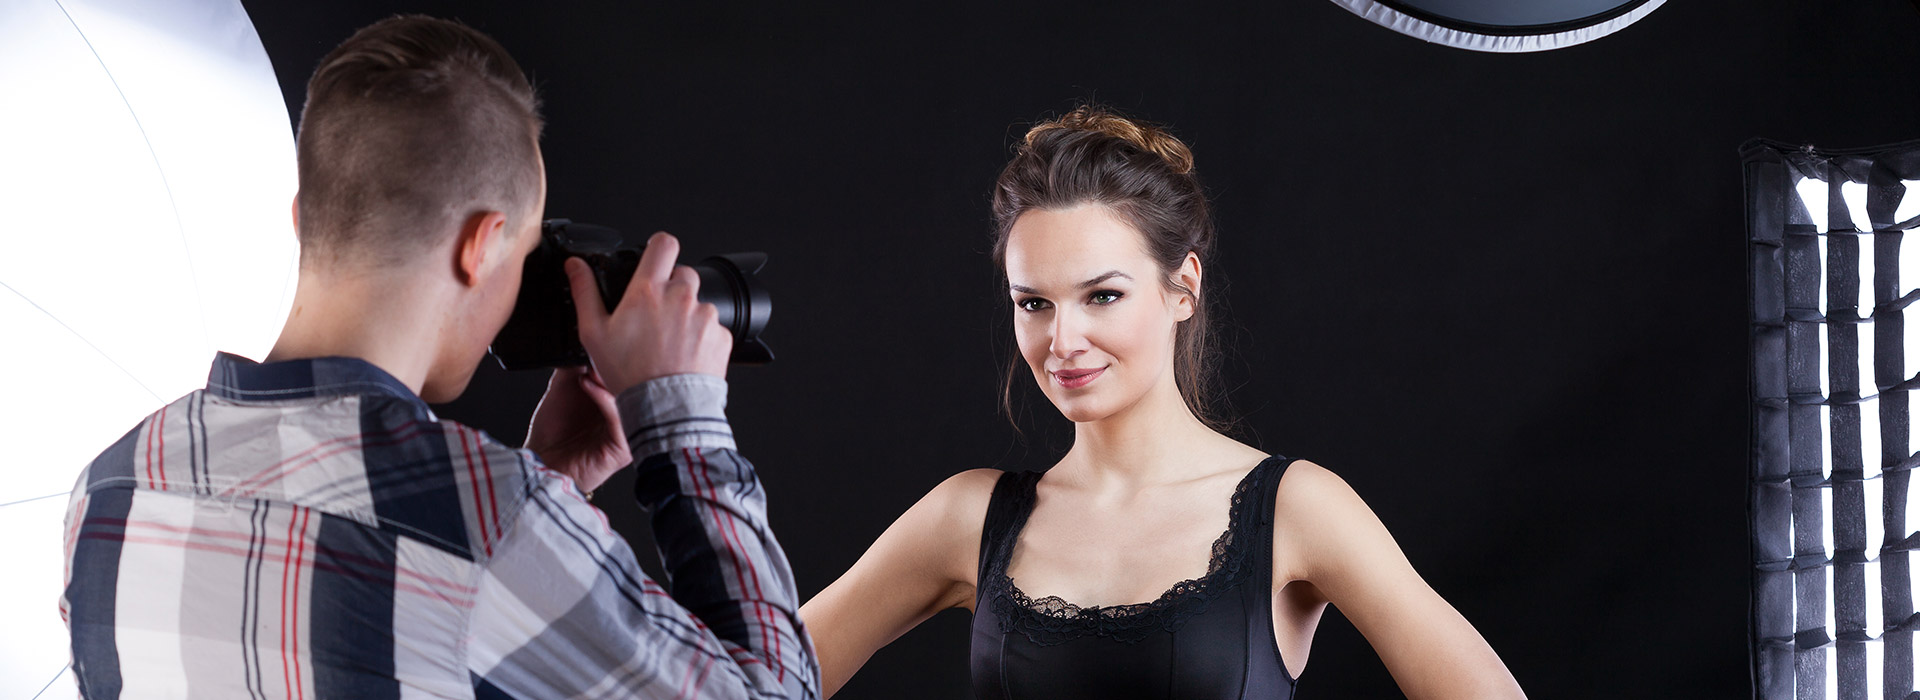 Maquiagem em foto com um fotografo e uma mulher sendo fotografada.